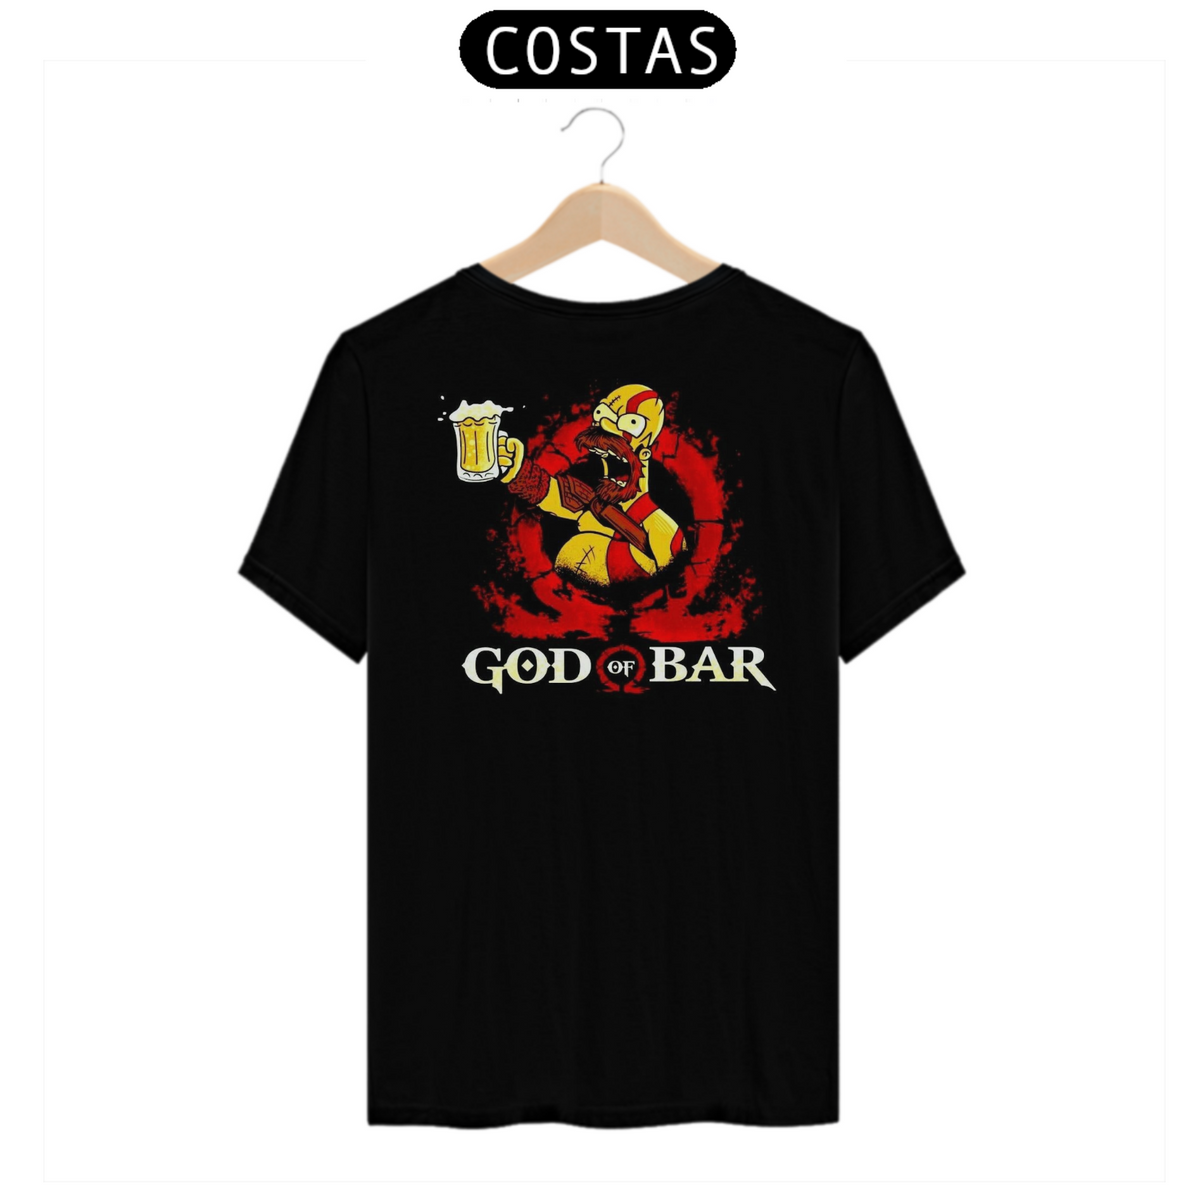 Nome do produto: T-shirt God of Bar